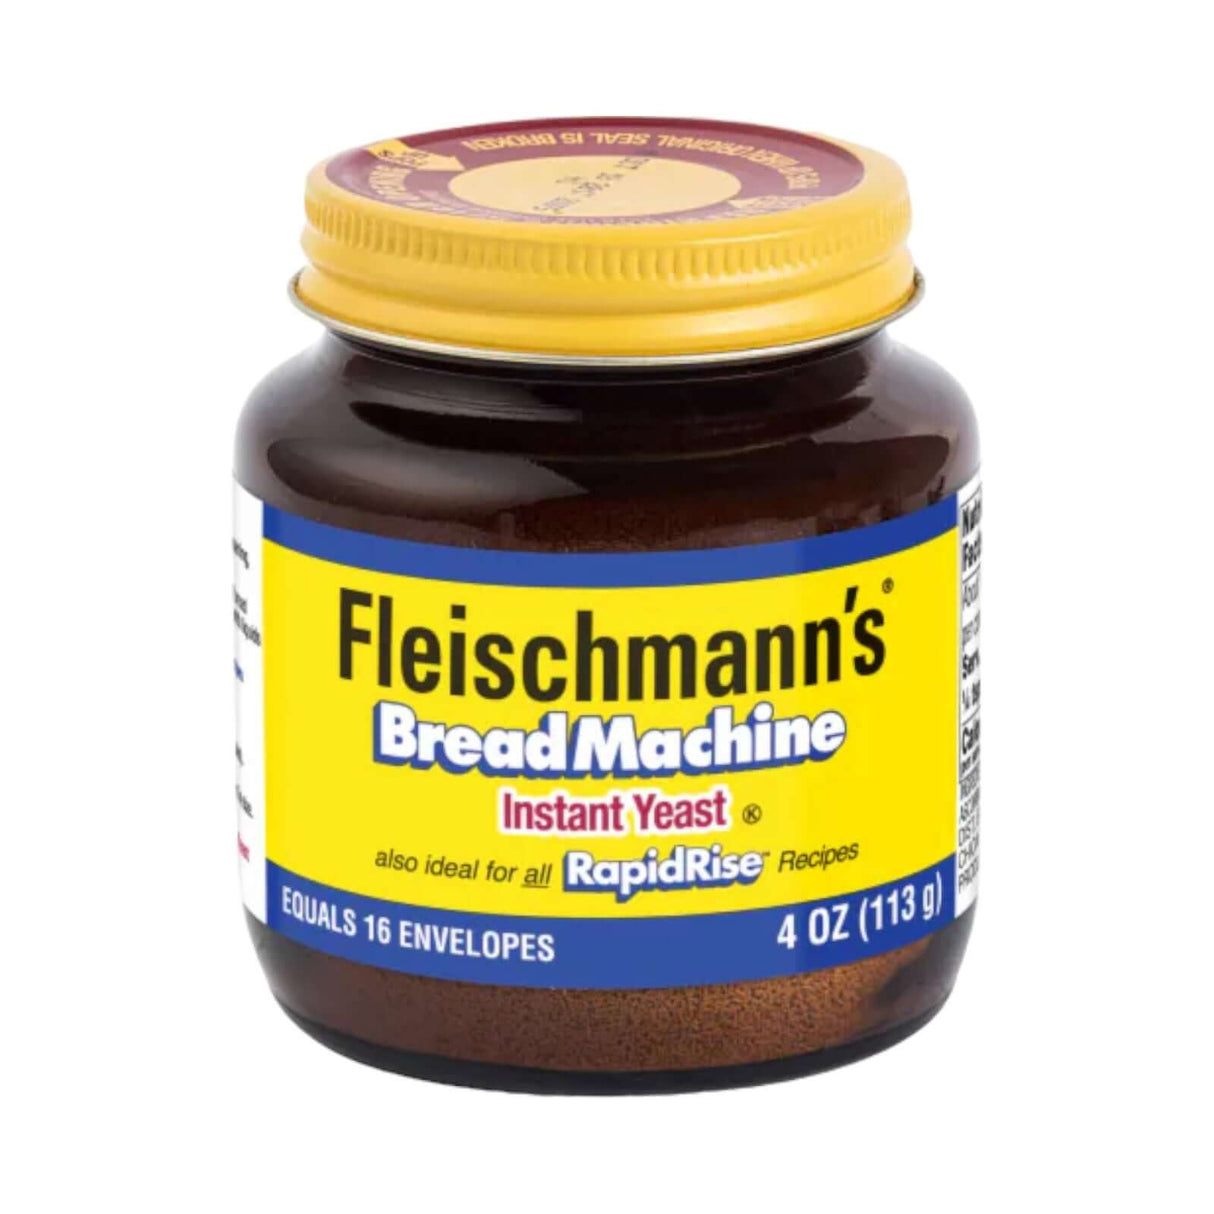 Fleischmann Bread machine Instant Yeast